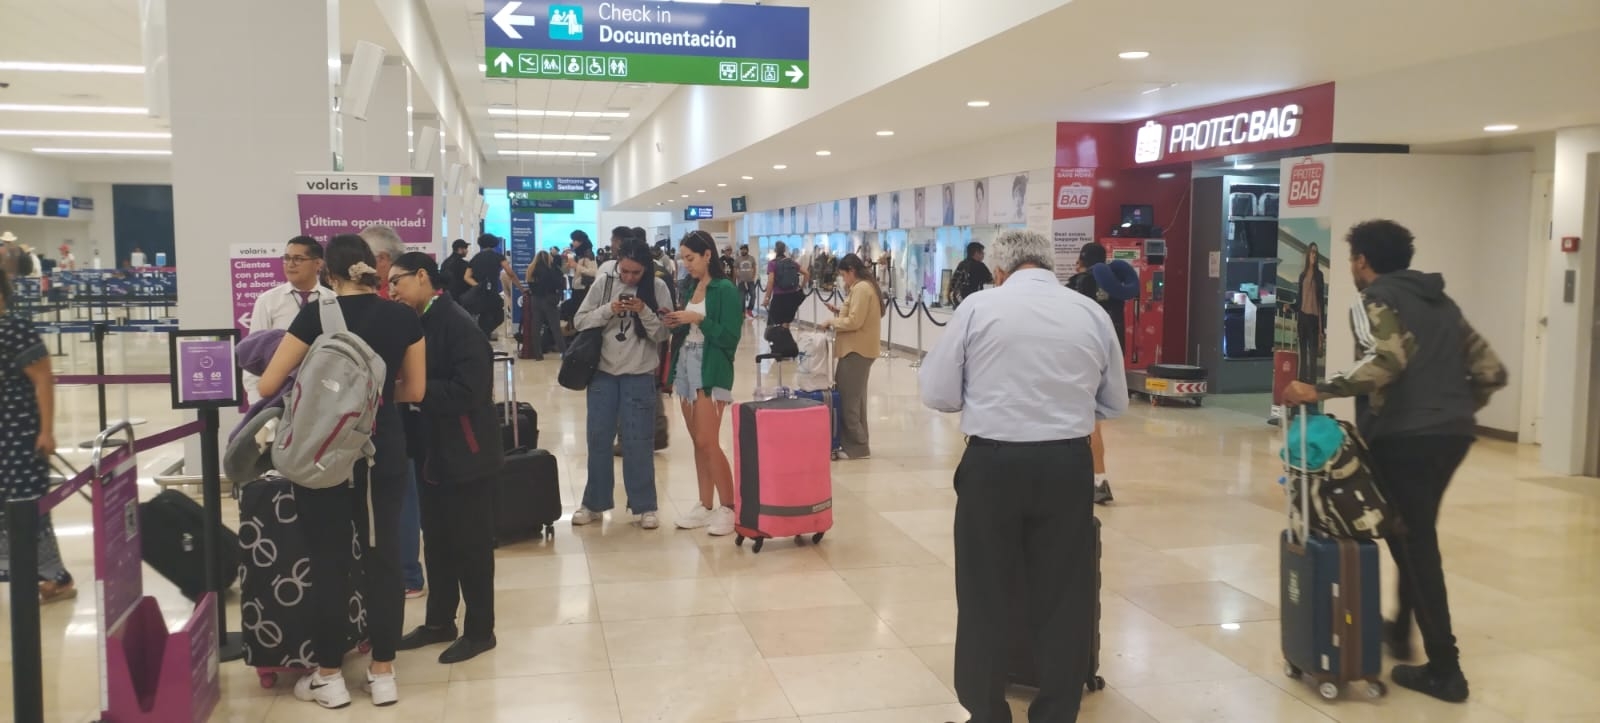 Turistas abarrotan vuelos en el aeropuerto de Mérida por el puente del 18 de marzo